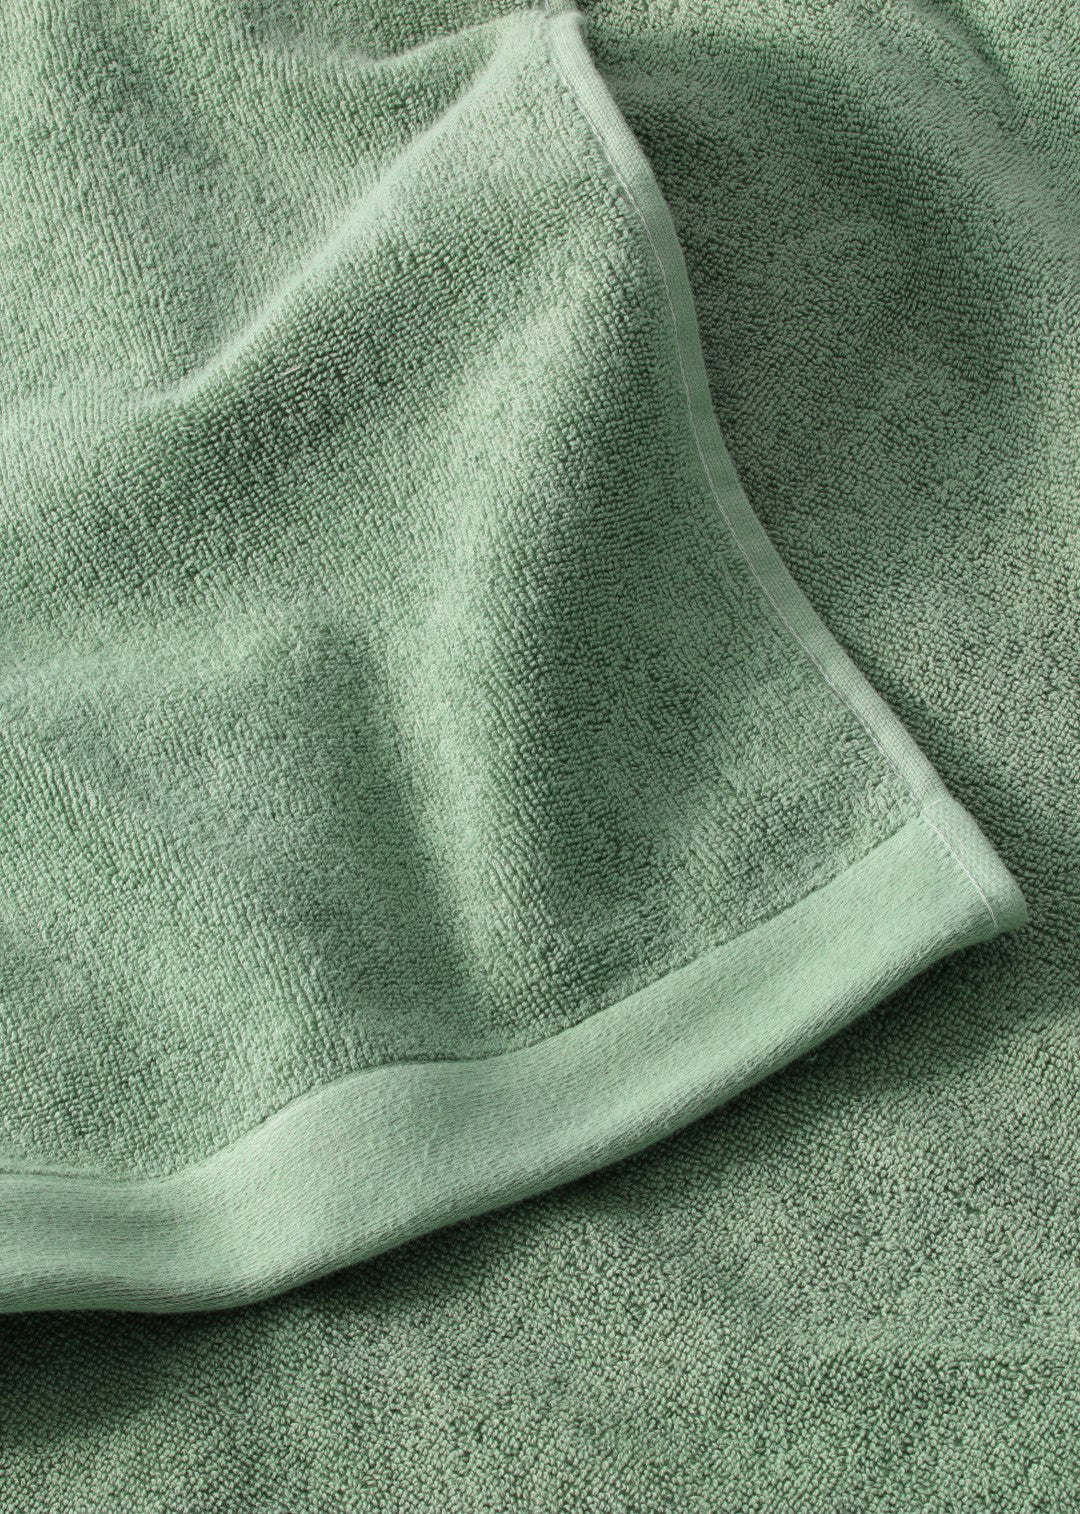 Handtuch Baumwolle Dunkelgrün 100 x 150 cm